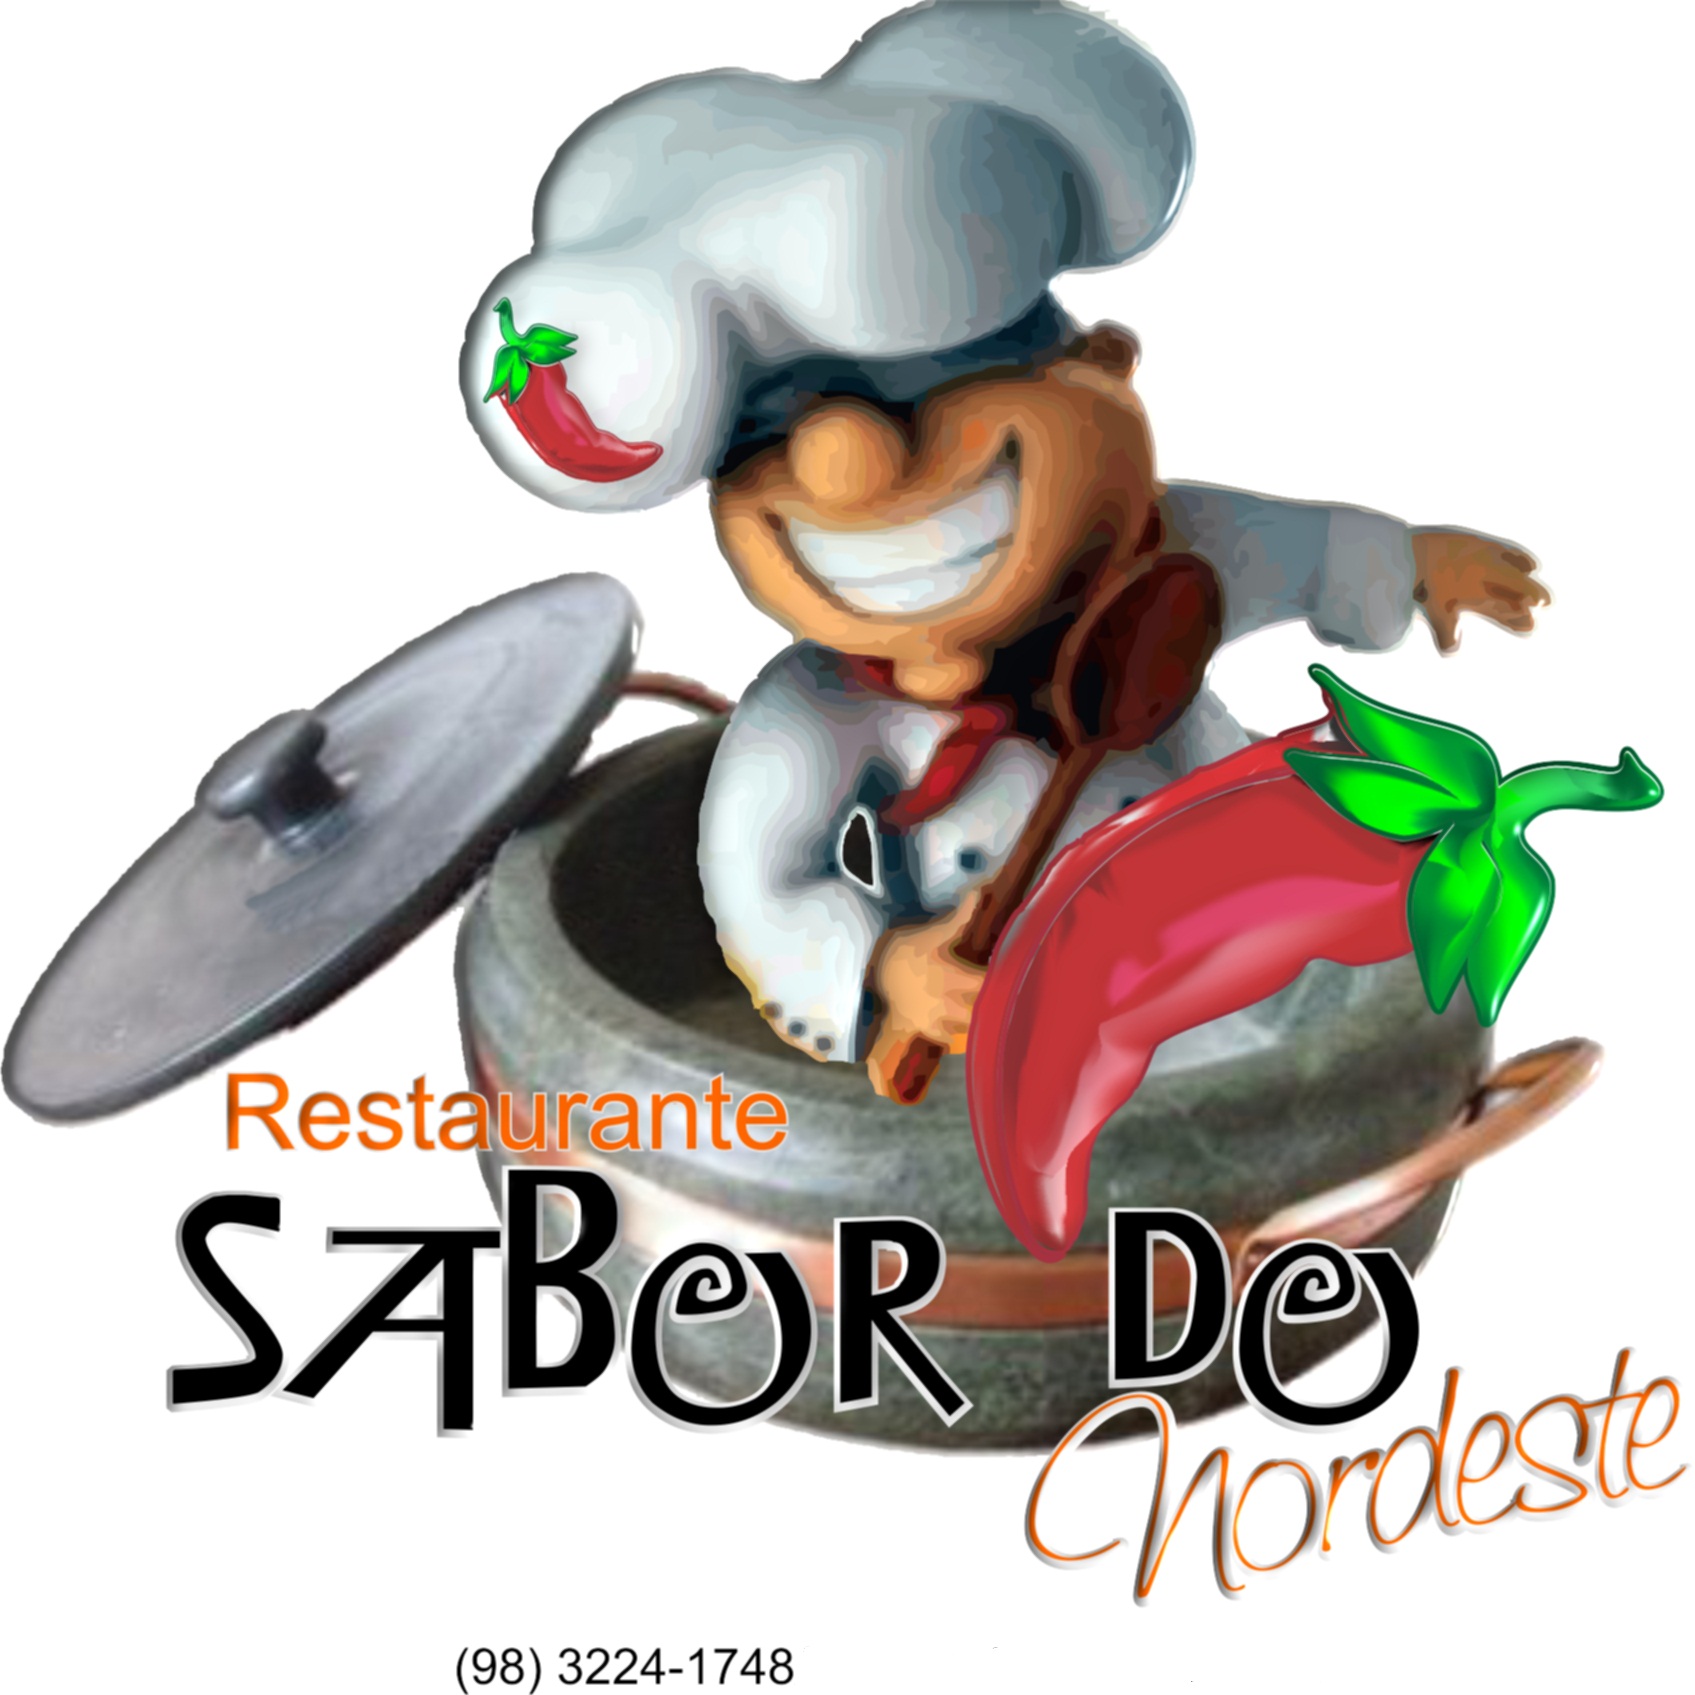 Restaurante Sabor do Nordeste - Foto 1